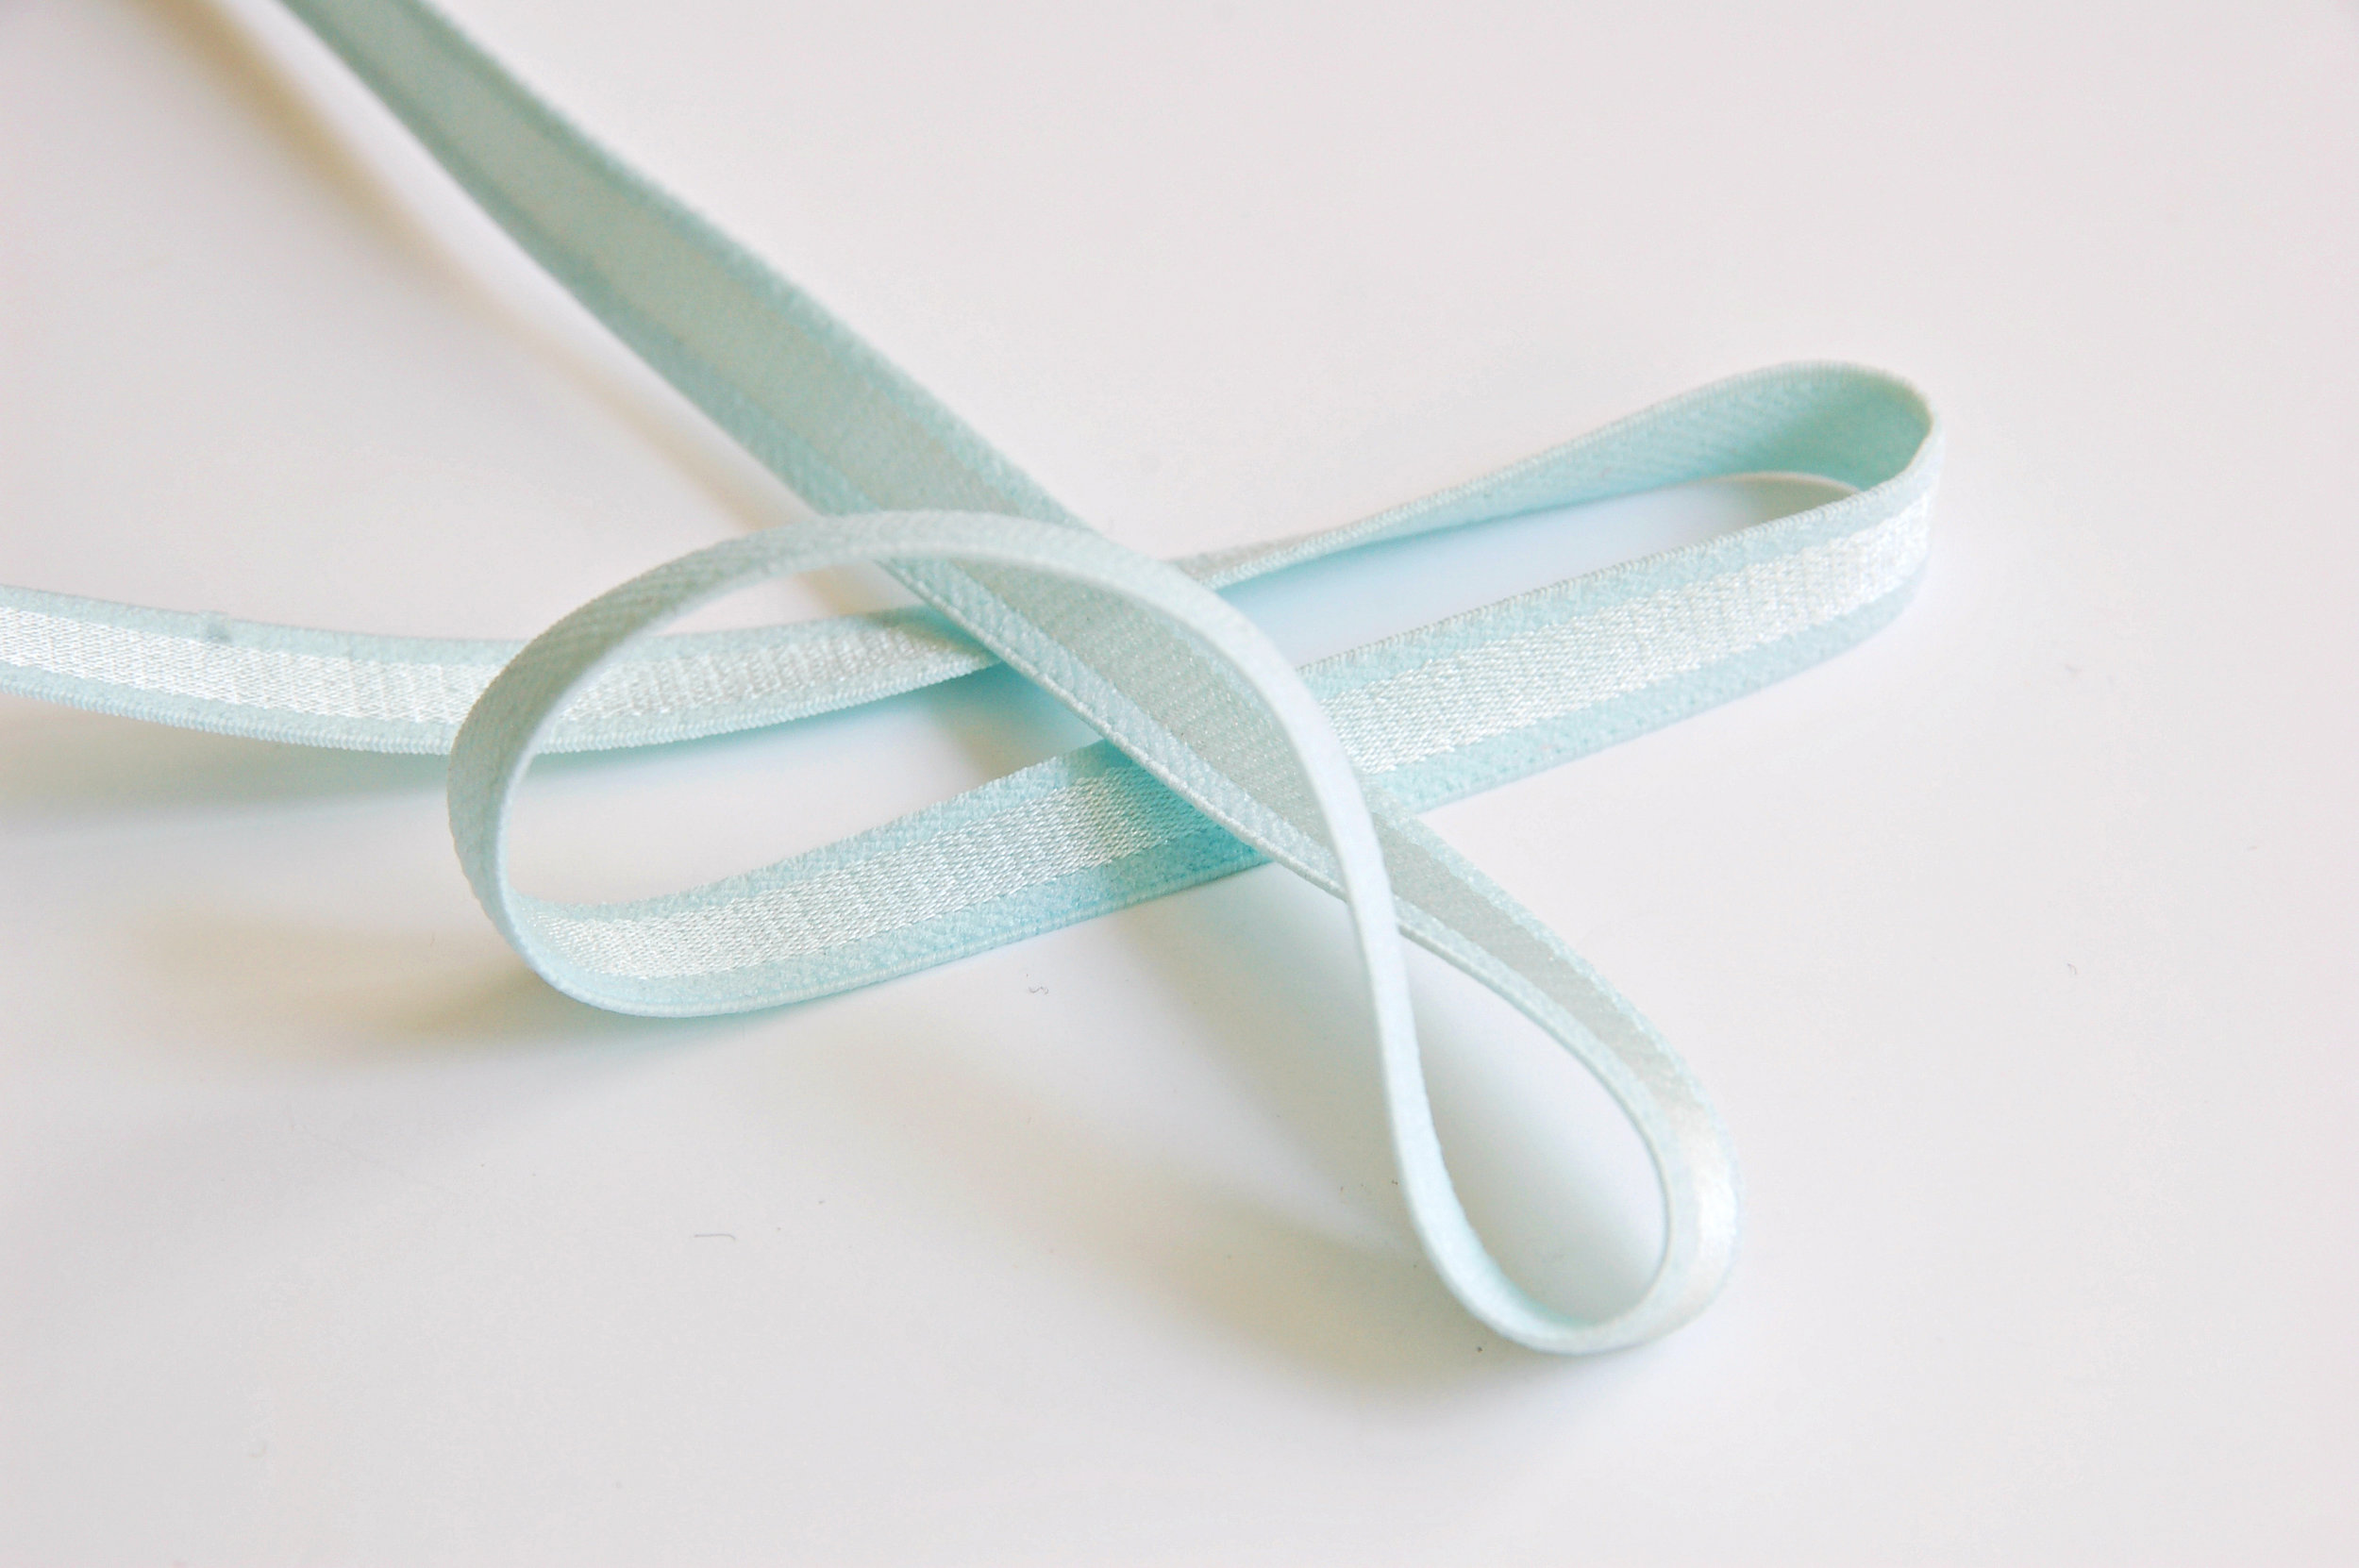 Guía de los elásticos para lencería // Bramaking elastic guide